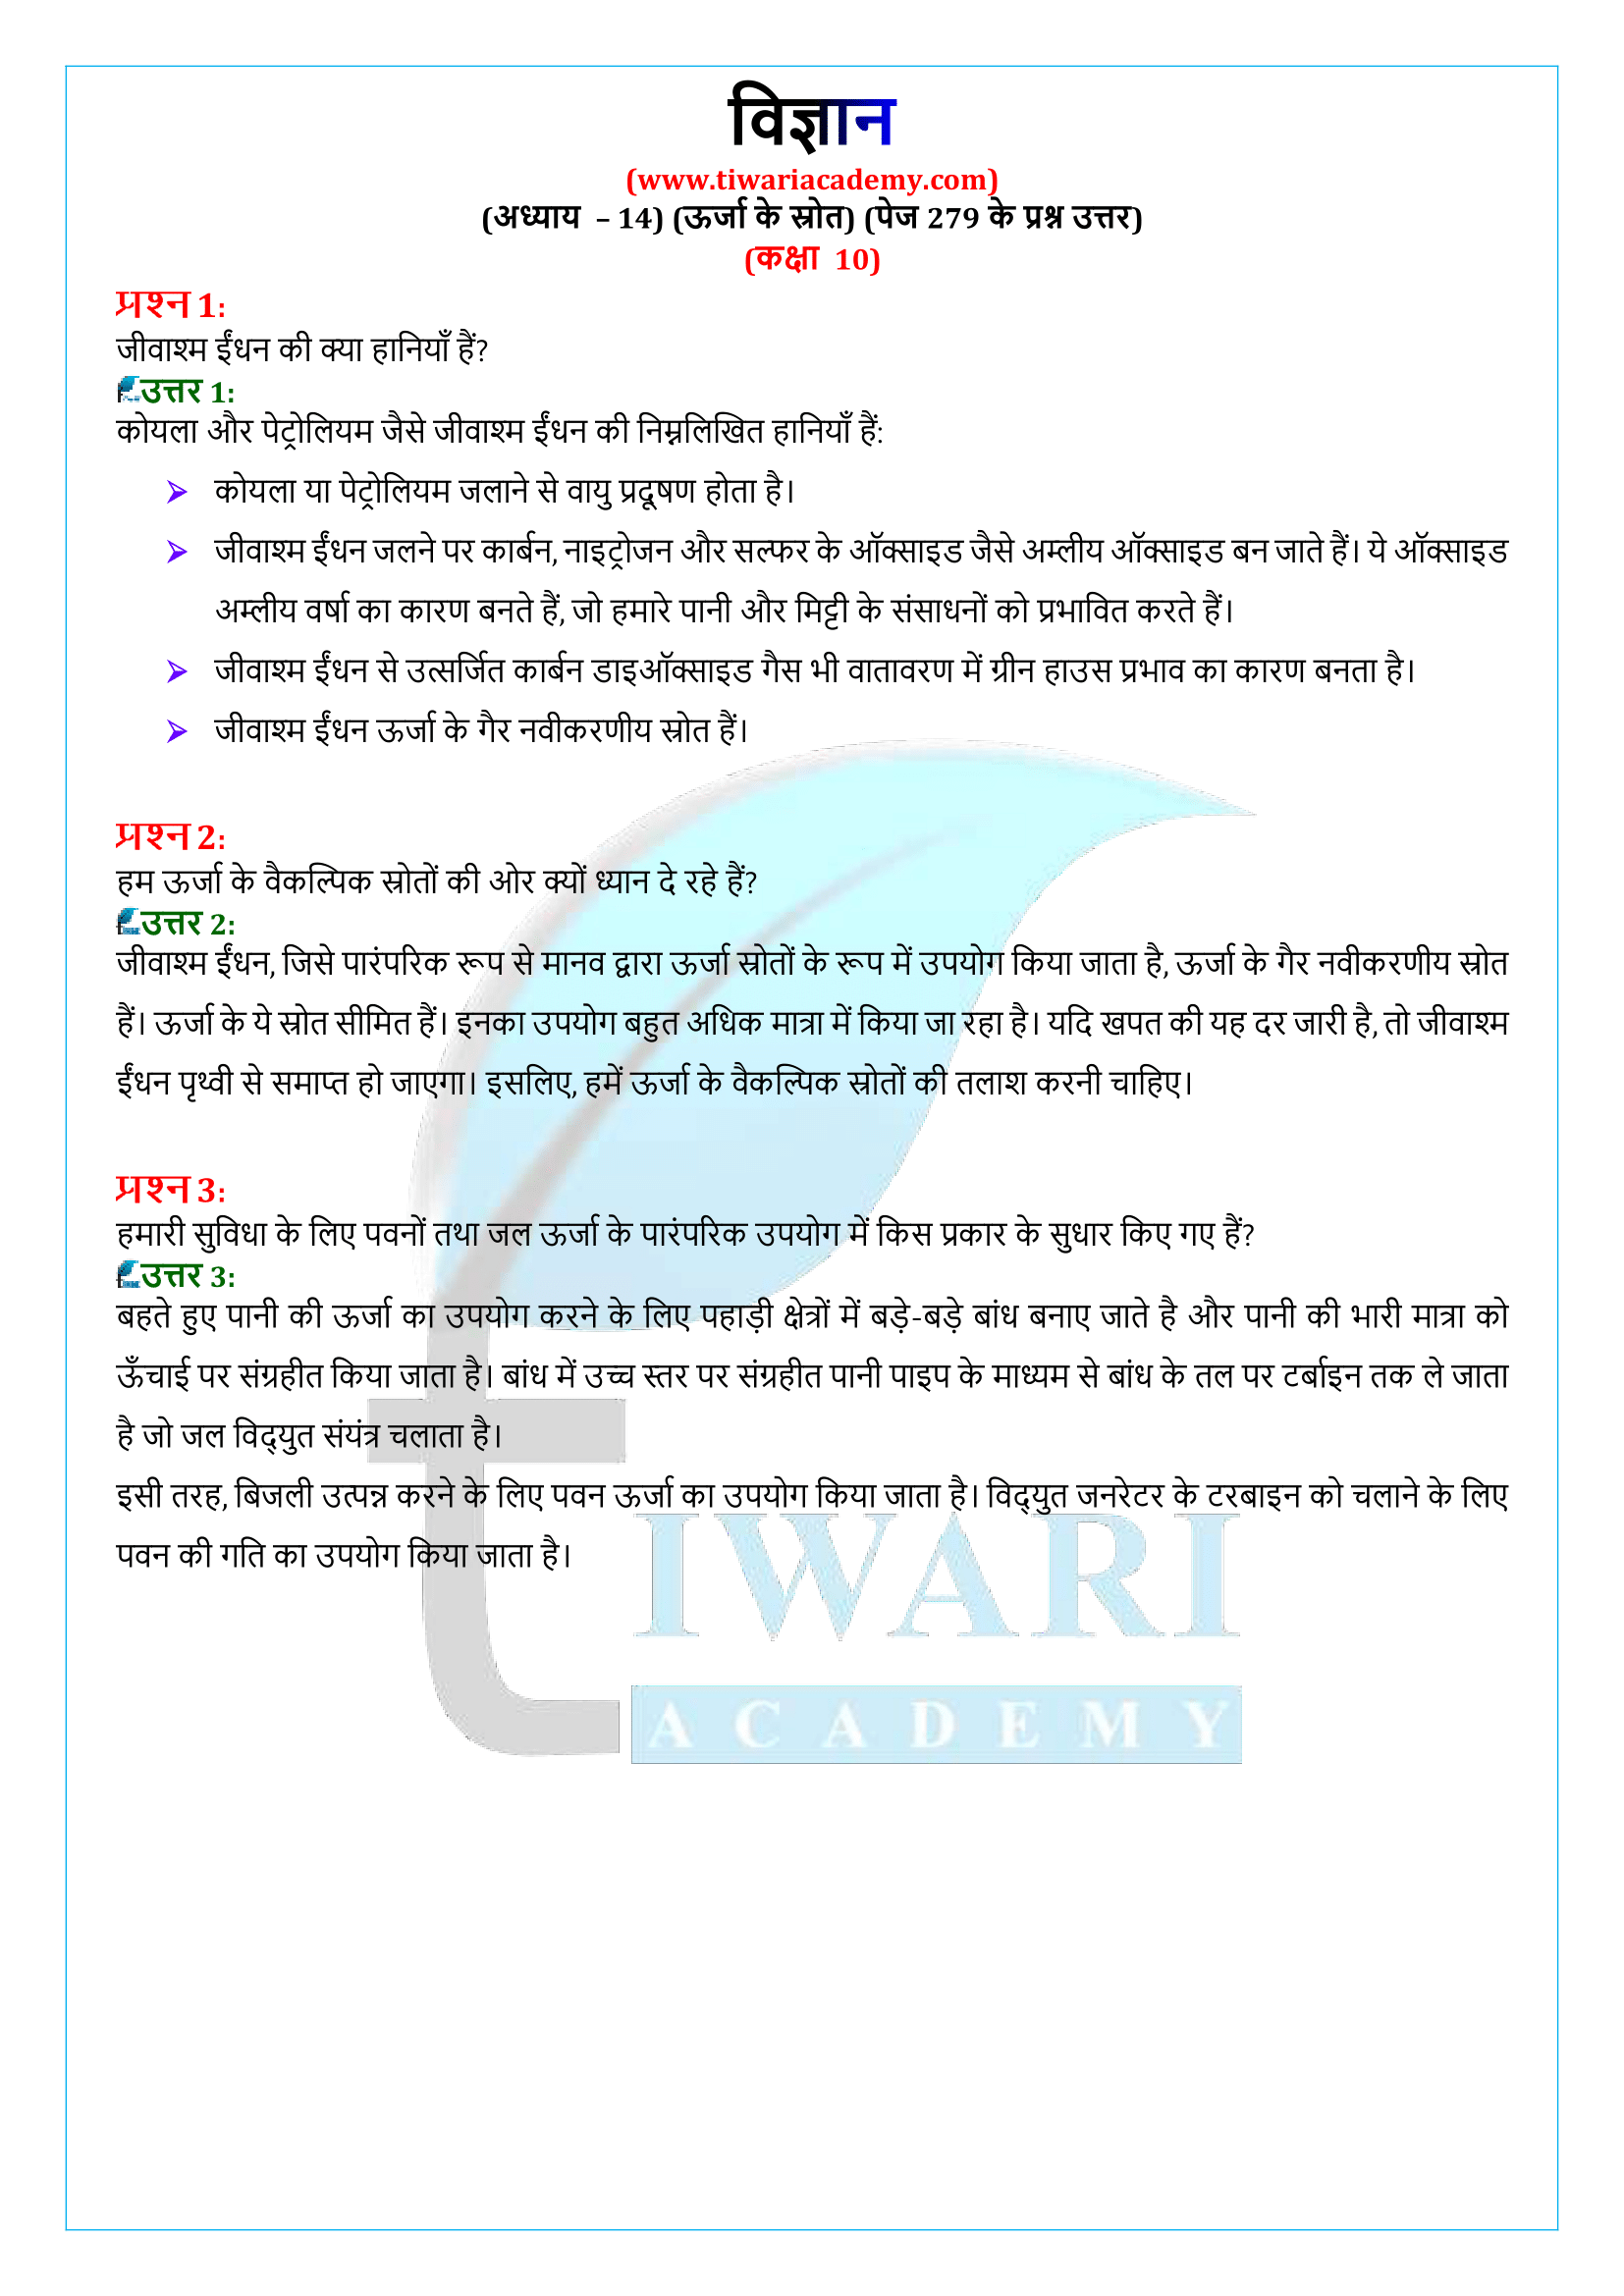 कक्षा 10 विज्ञान अध्याय 14 पेज 279 के प्रश्न उत्तर